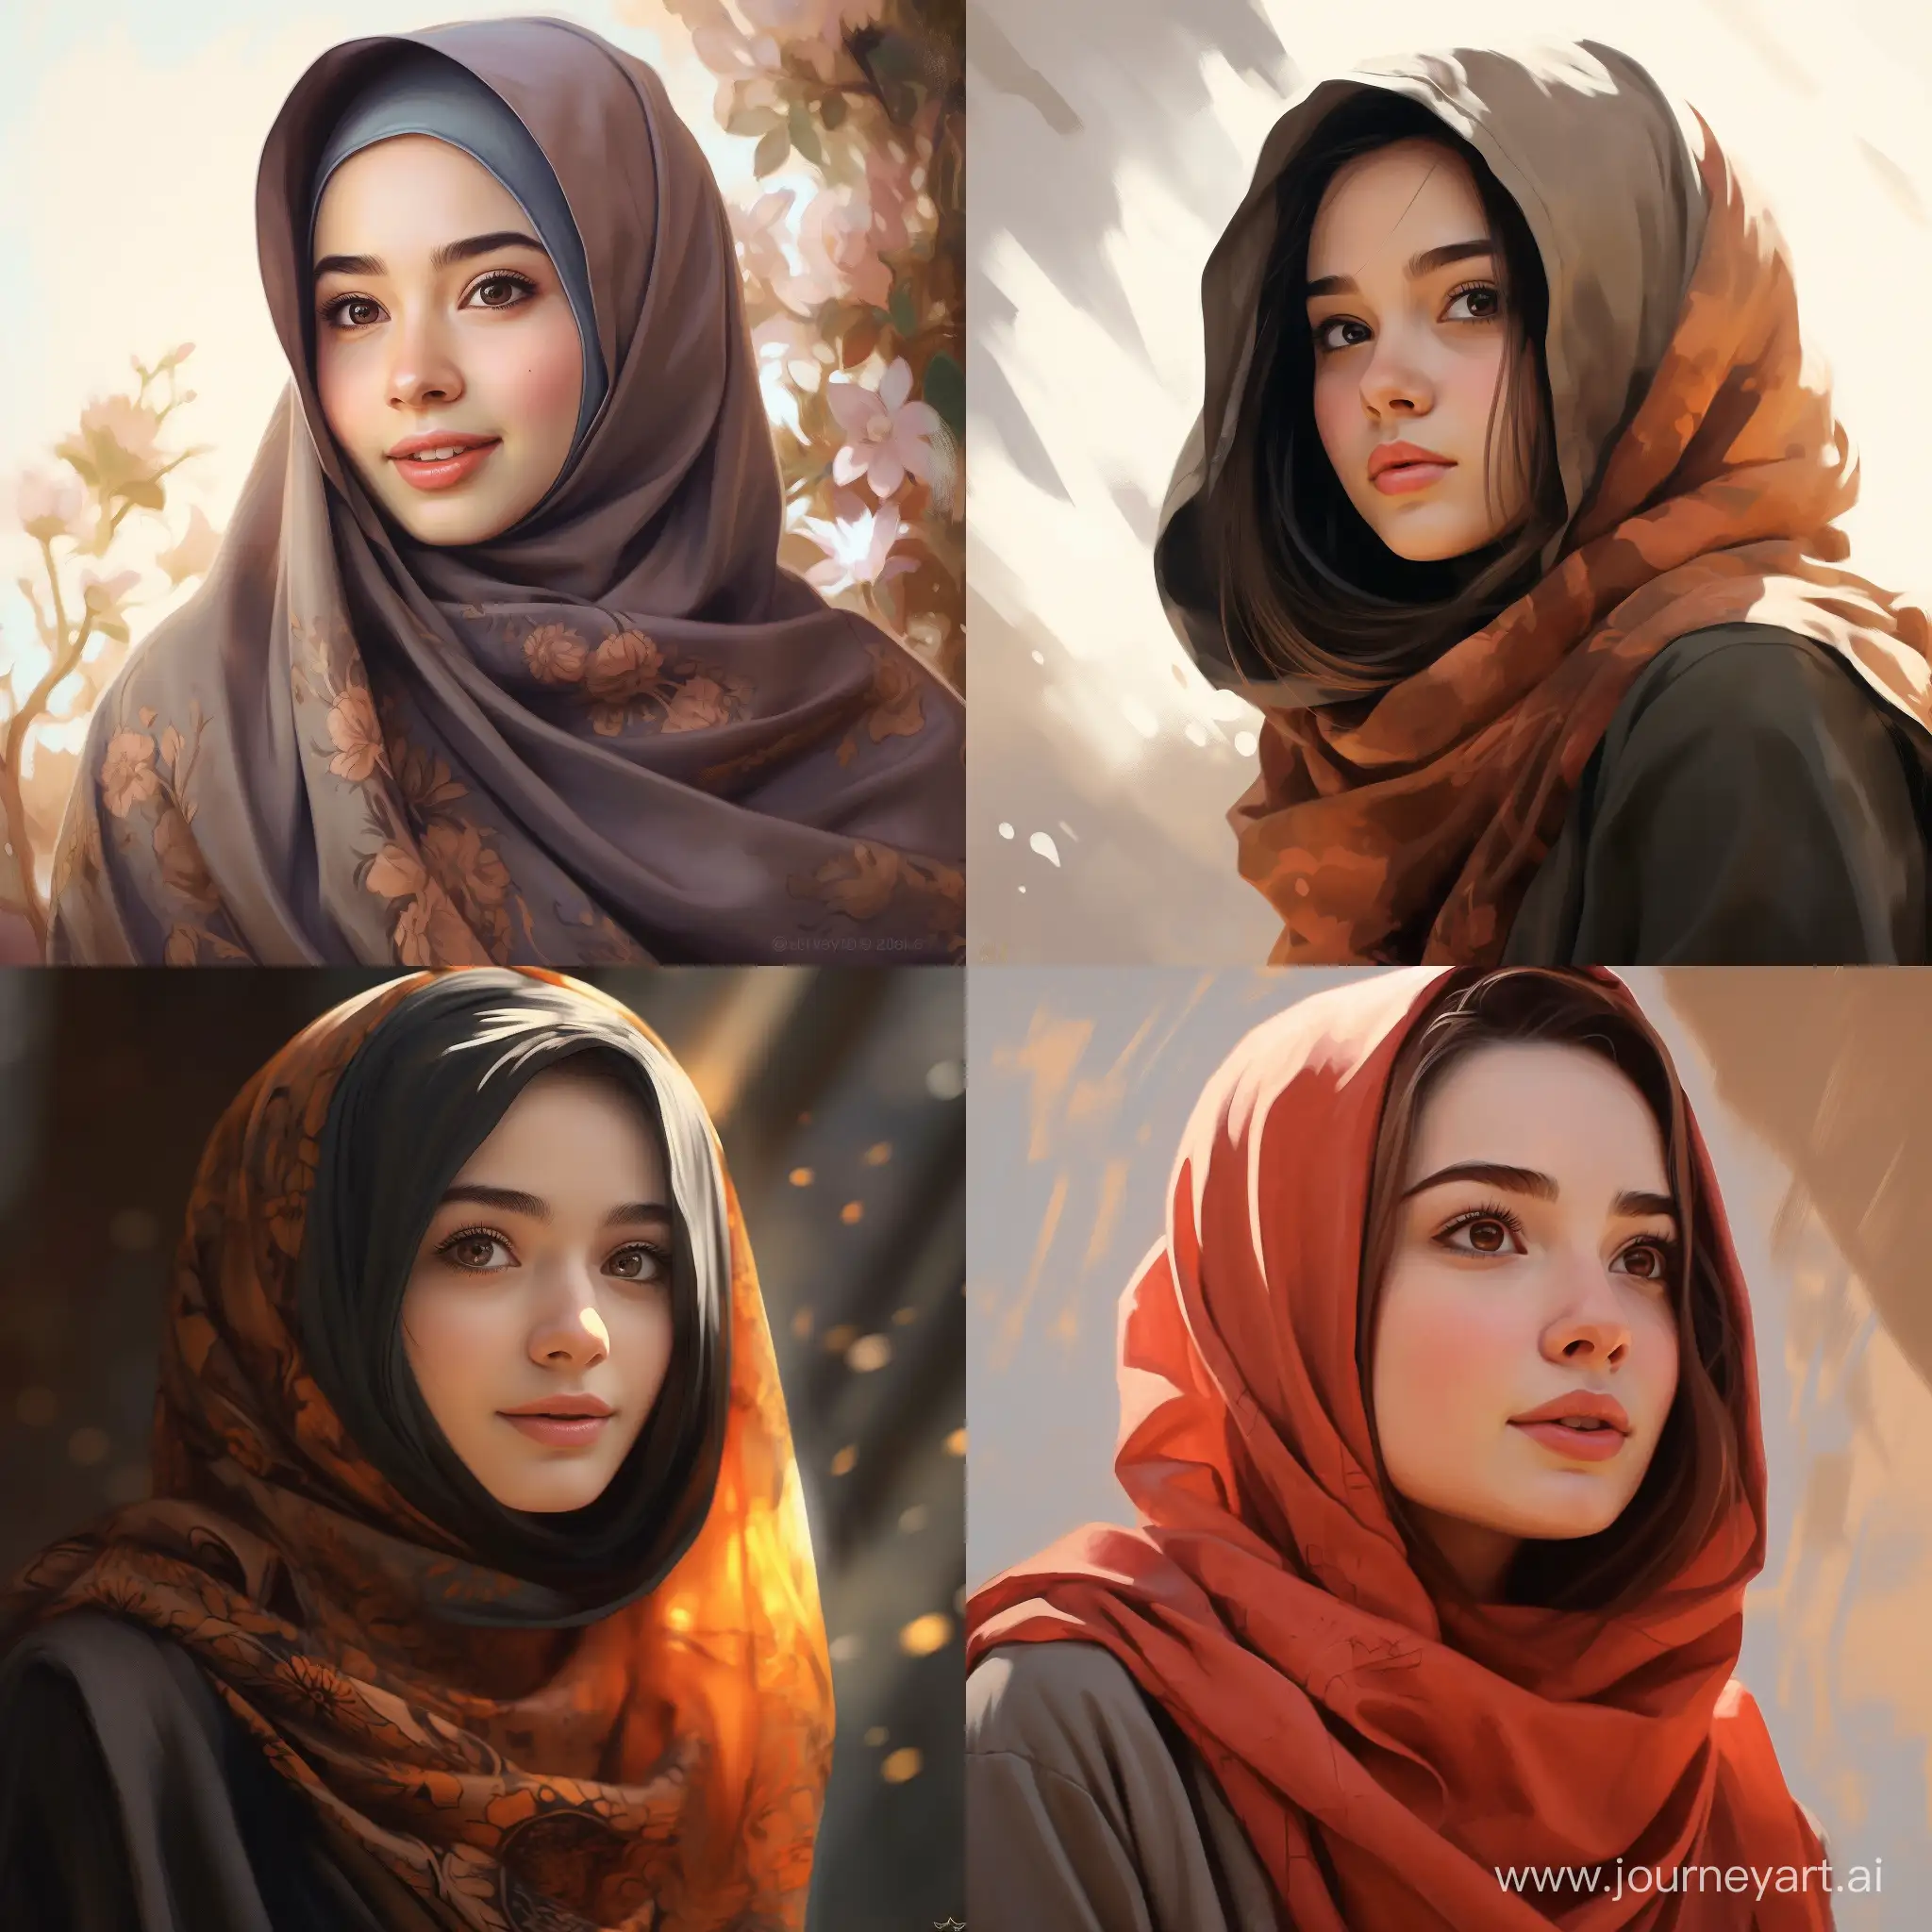 Graceful-Arab-Girl-Wearing-Hijab-in-11-Aspect-Ratio-Image-69651